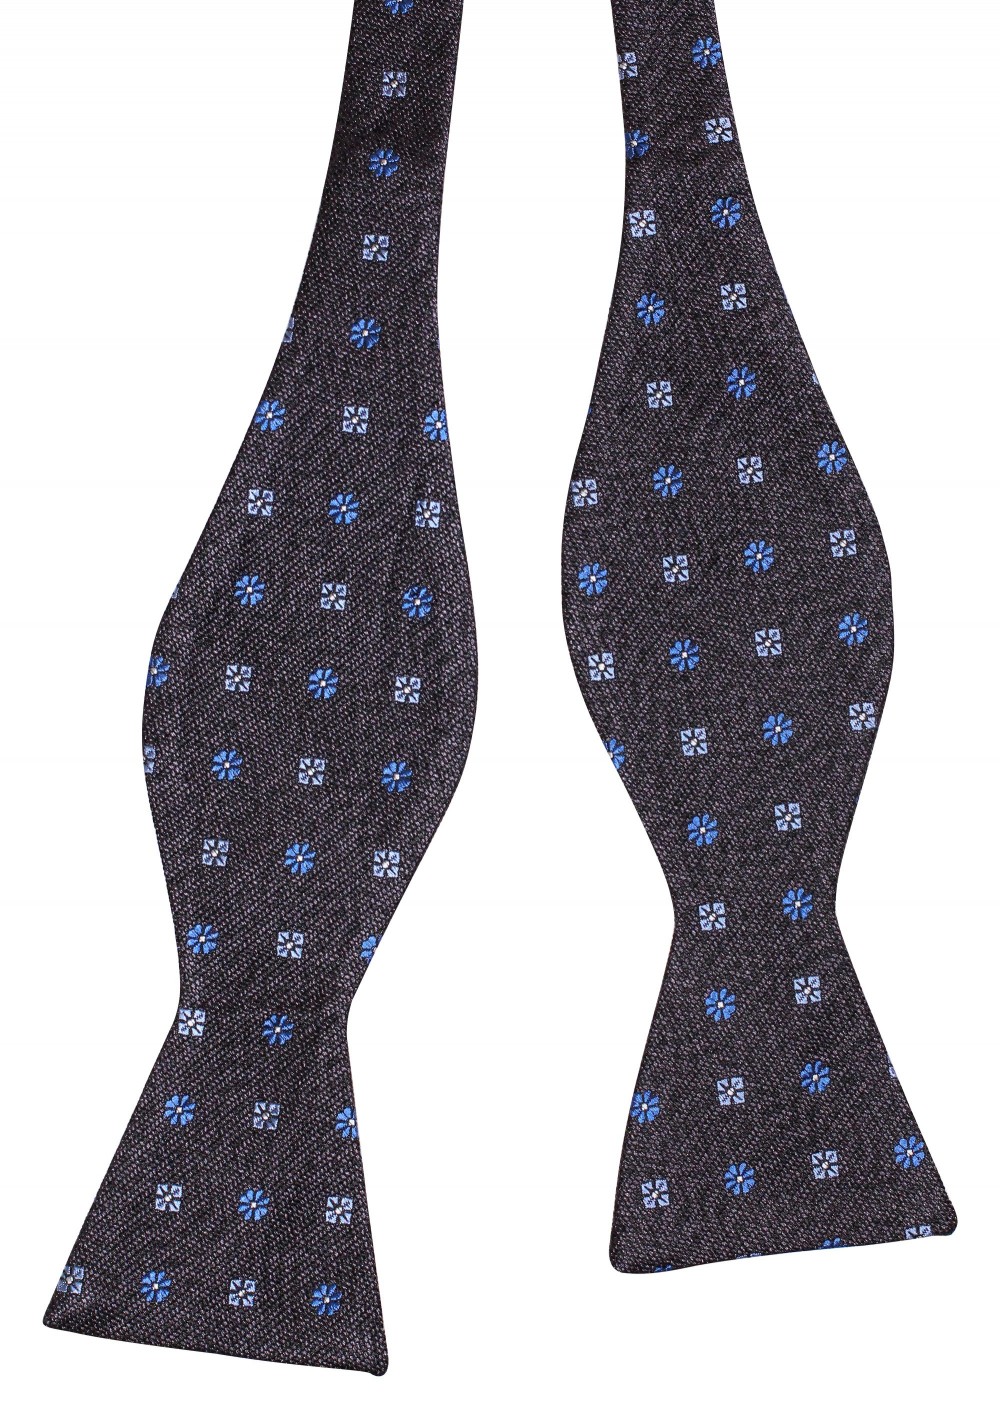 Denim Blue Bow Tie | Self Tie Silk Bow Tie in Denim Blue Floral Design ...